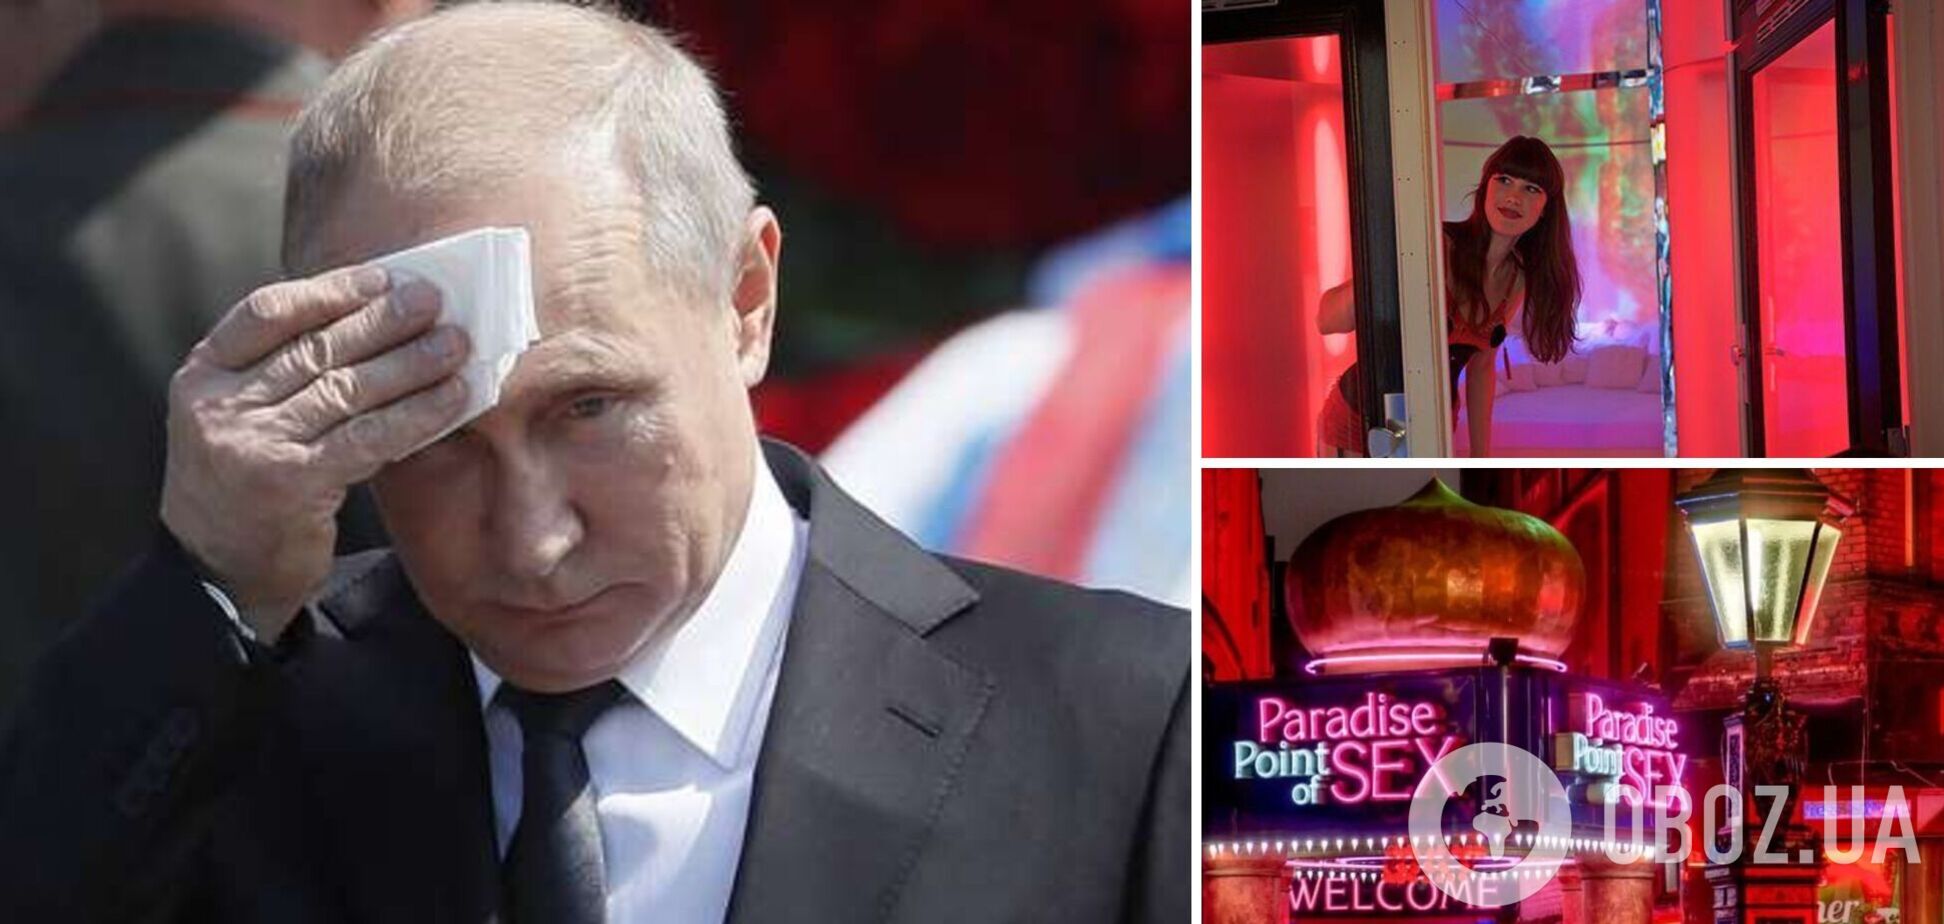 В Германии устроили перформанс с Путиным в крови и пенисах: россиянка возмутилась и вызвала насмешки в сети. Видео